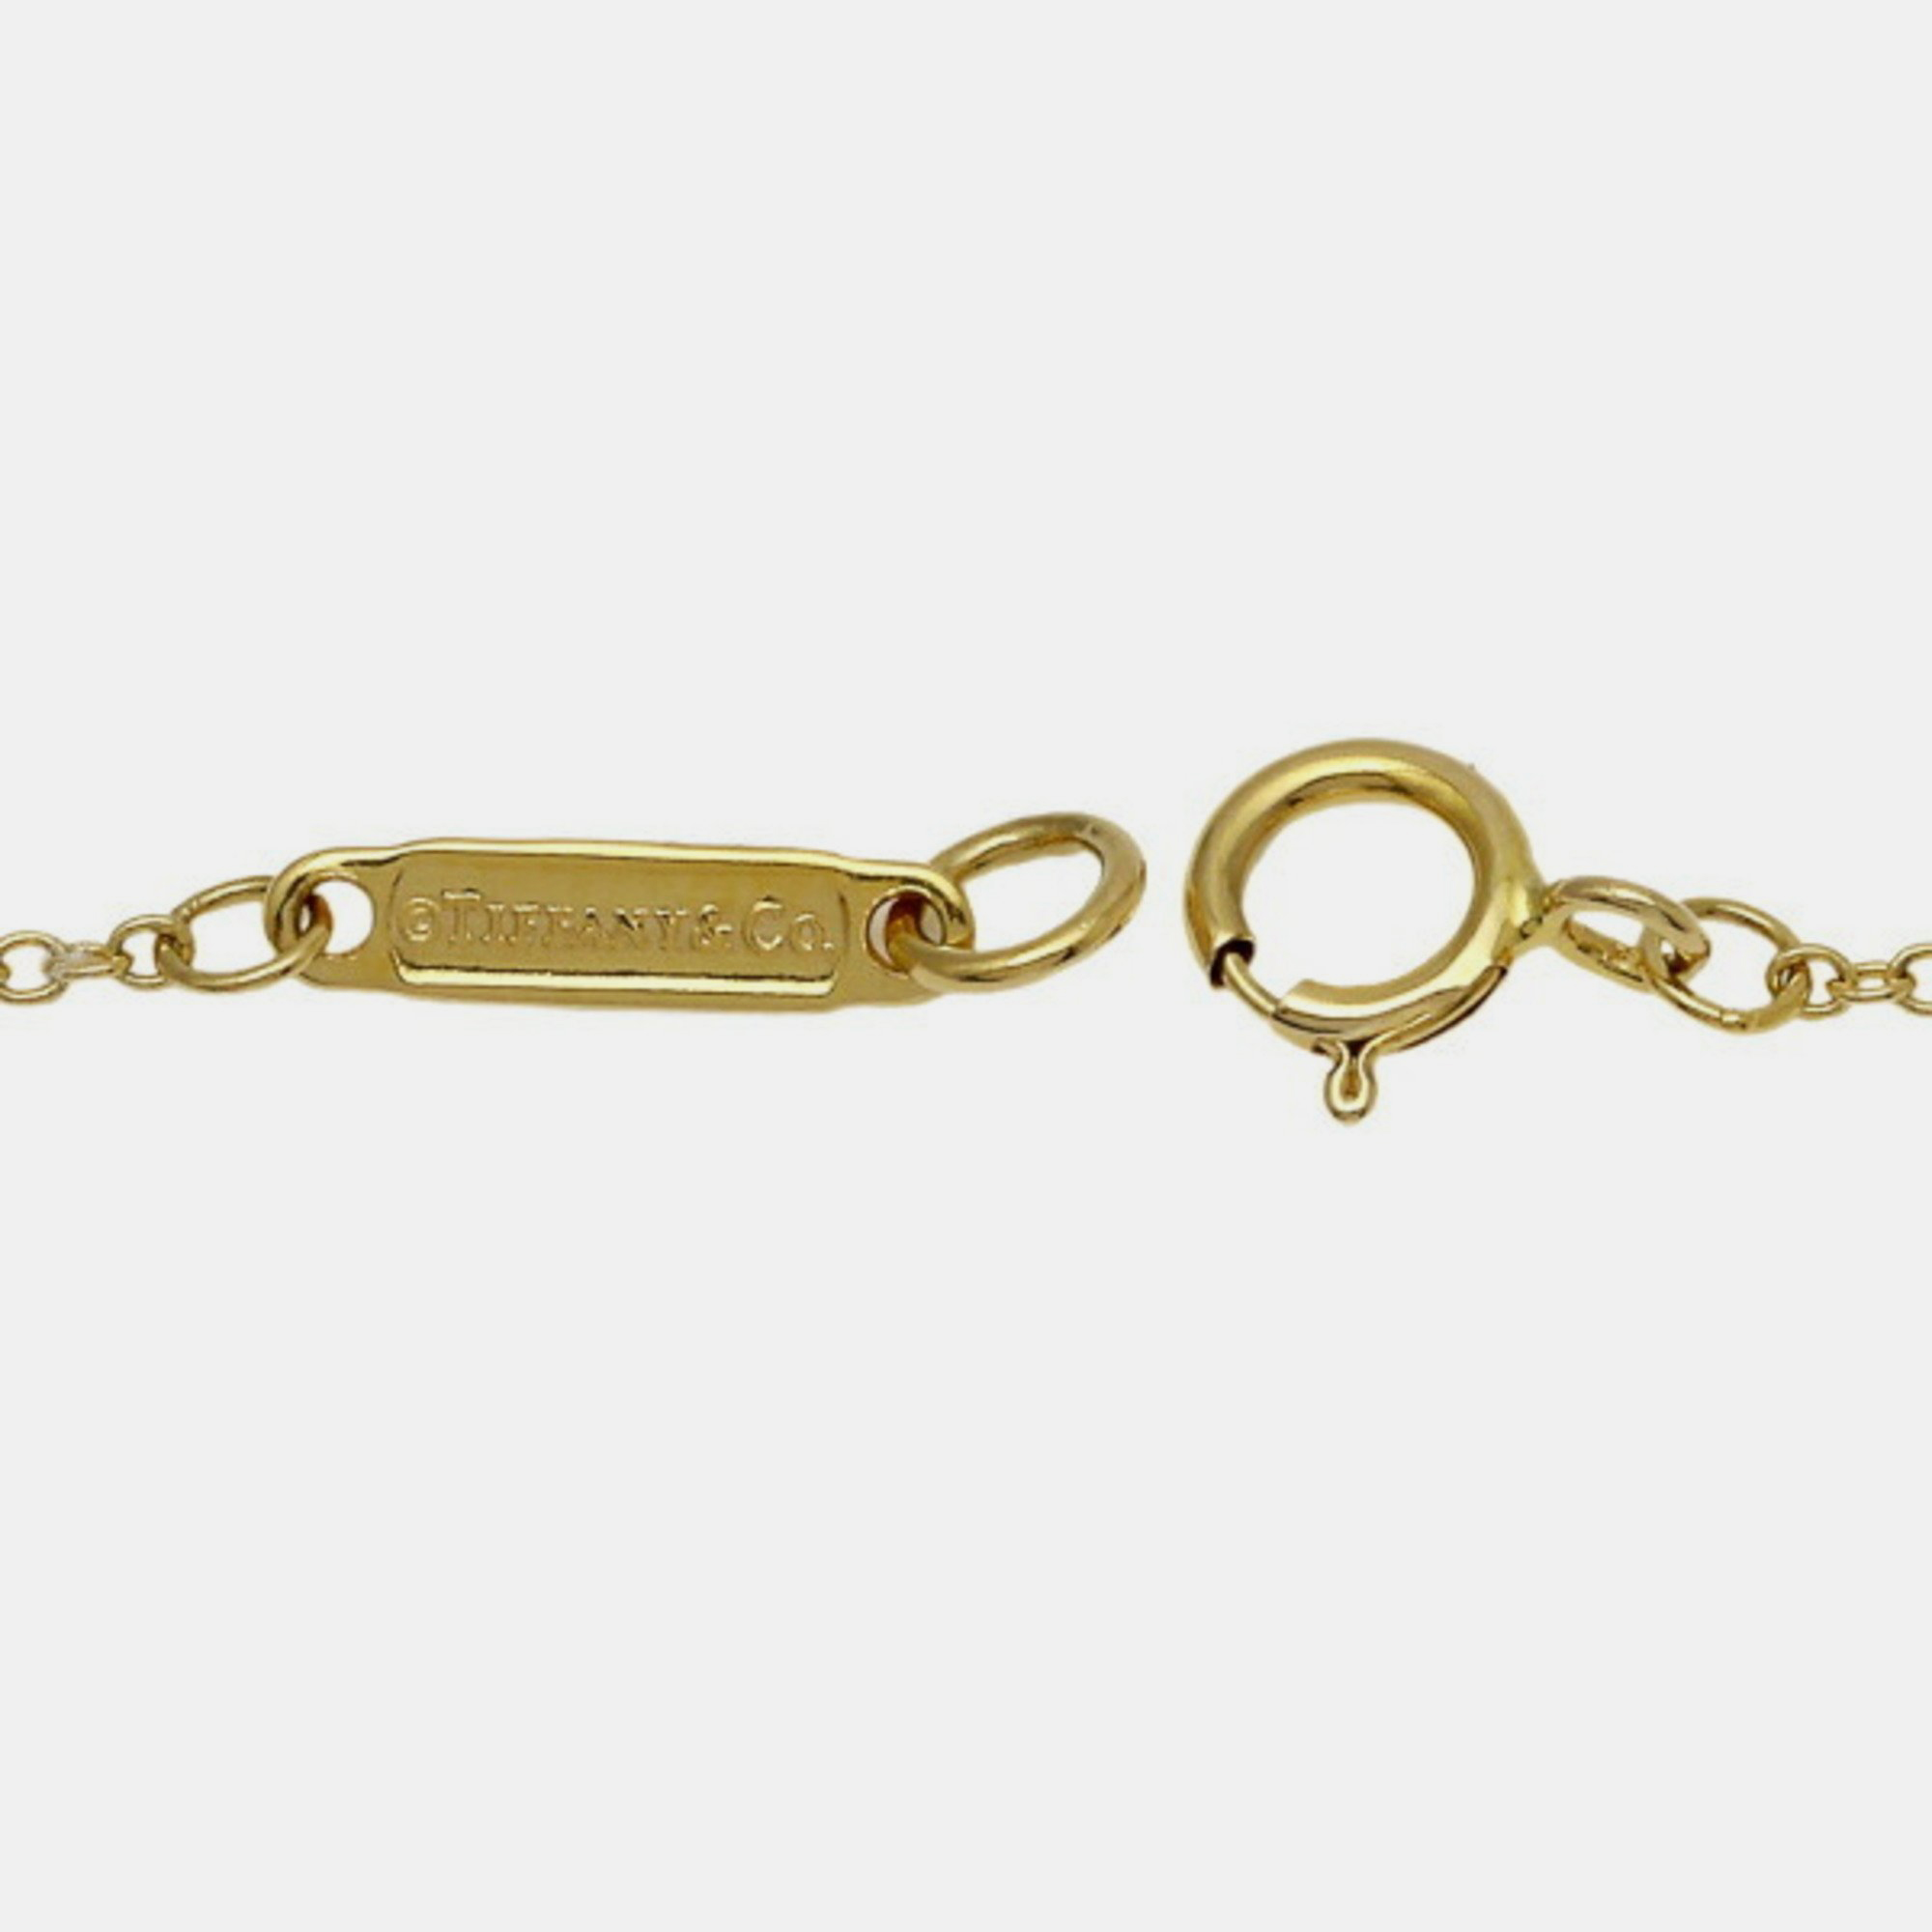 Tiffany & Co. Tiffany 1837 18K Yellow Gold Diamond Necklace